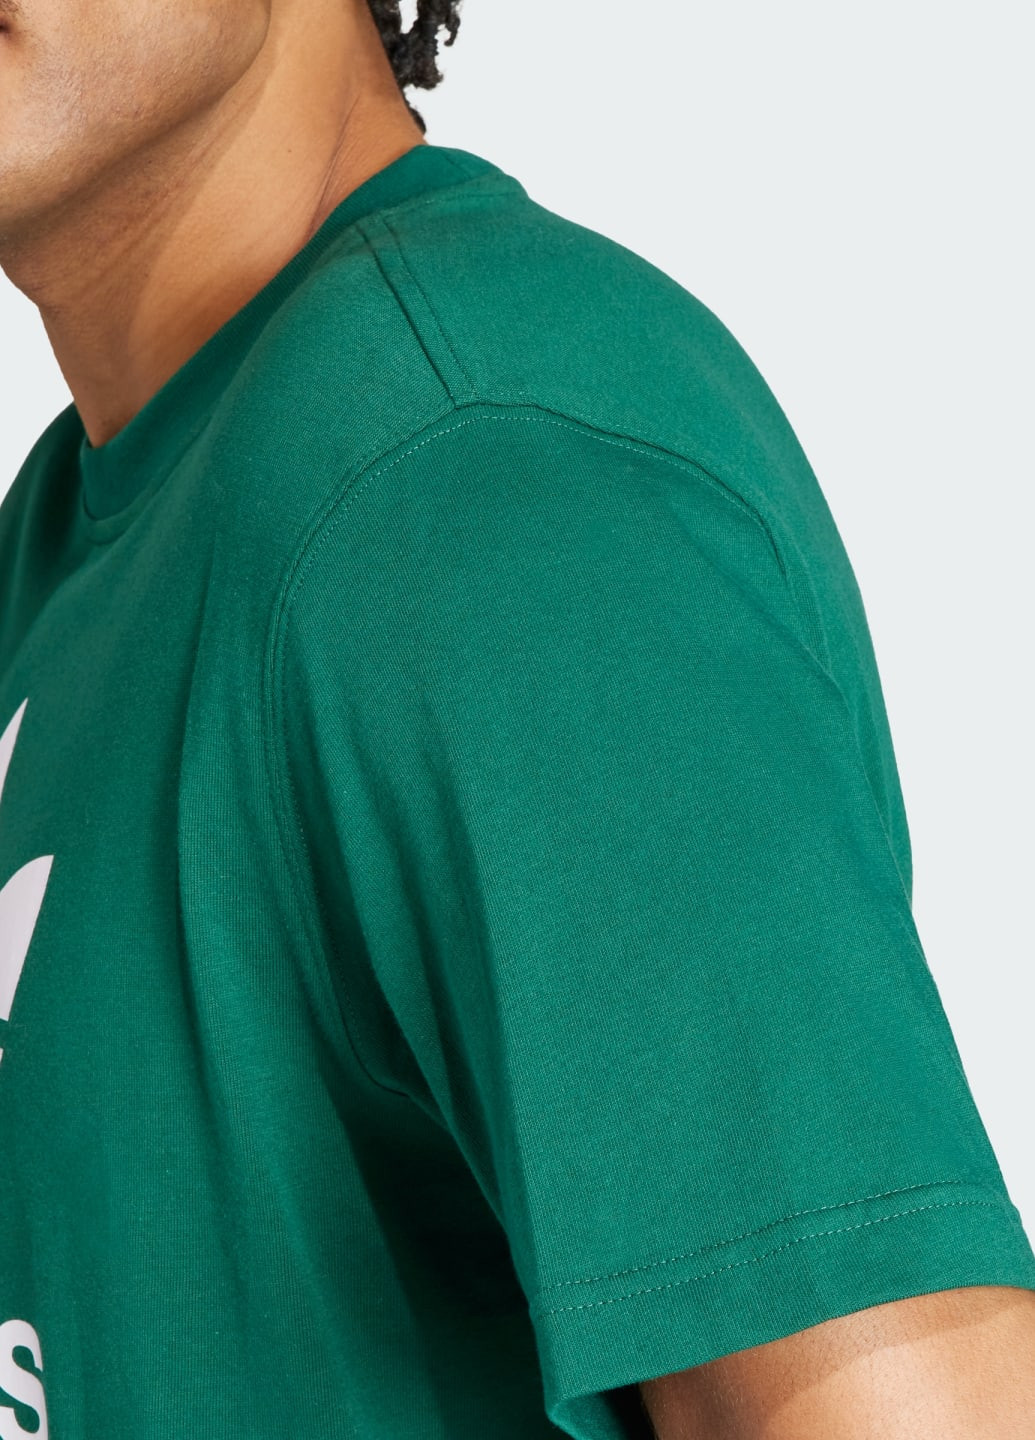 Зеленая футболка adicolor trefoil adidas